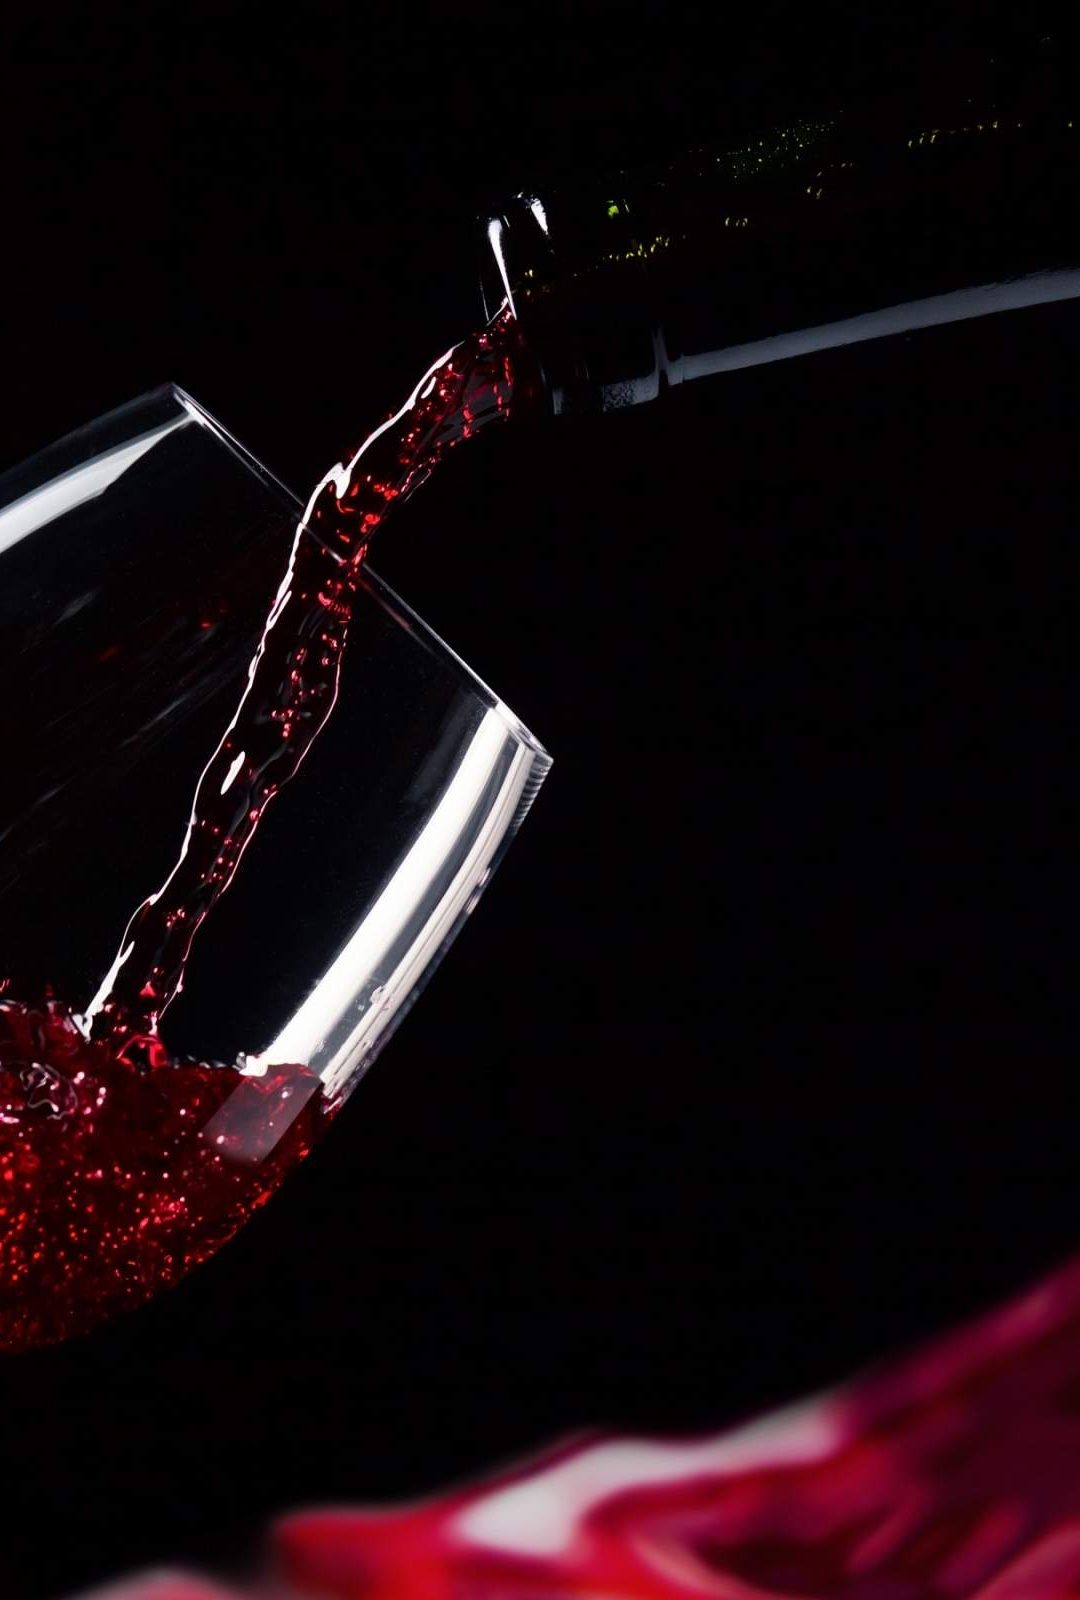 fond d'écran de vin pour mobile,l'eau,rouge,verre,vin rouge,verres à pied